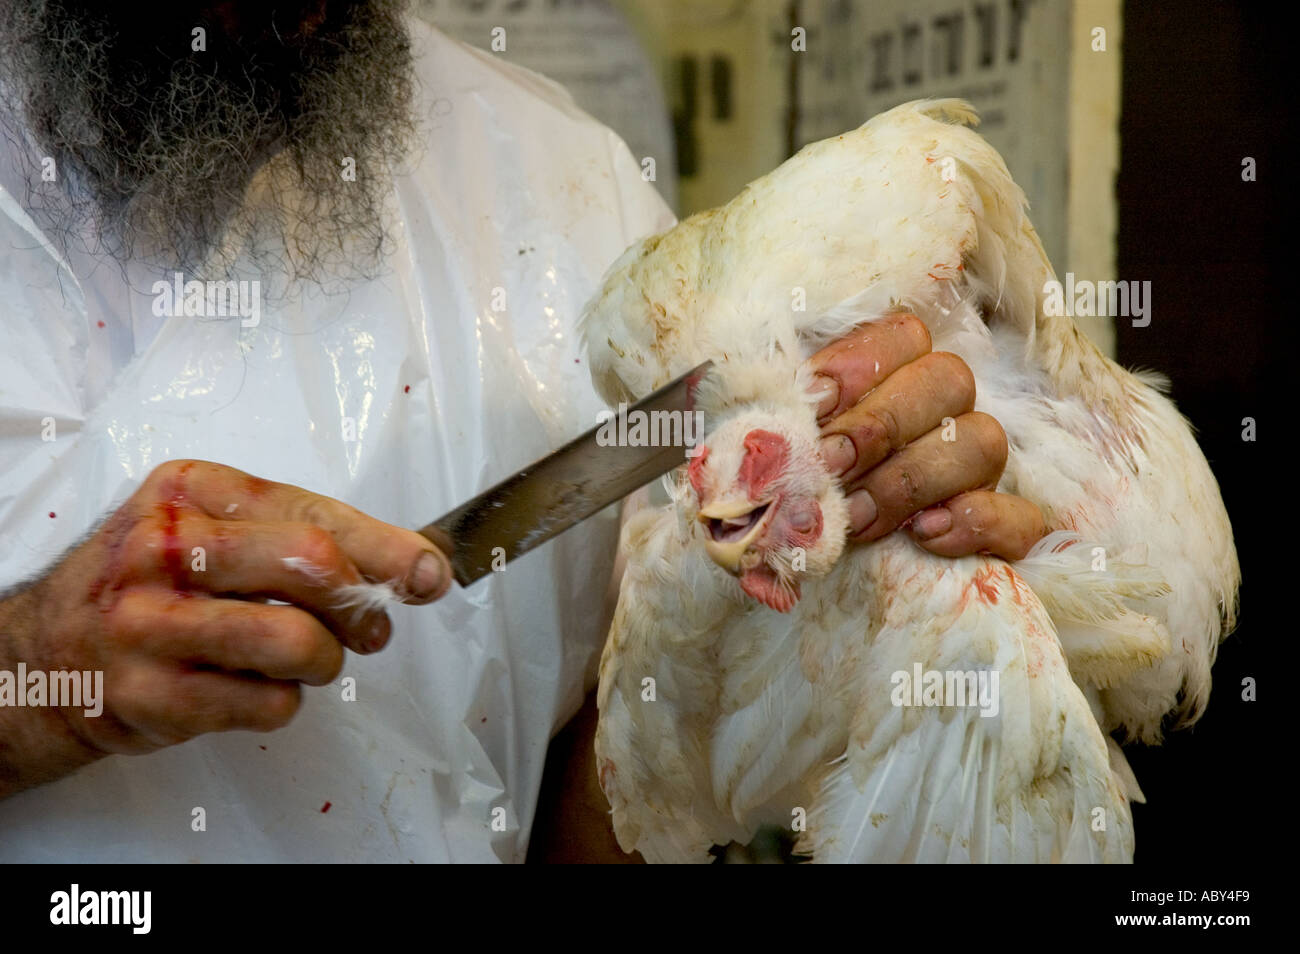 Israele Gerusalemme Mea Shearim ultra ortodosso quartiere ebraico kaparot close up di un rabbino s mani di uccidere un pollo secondo le regole ebraiche Foto Stock